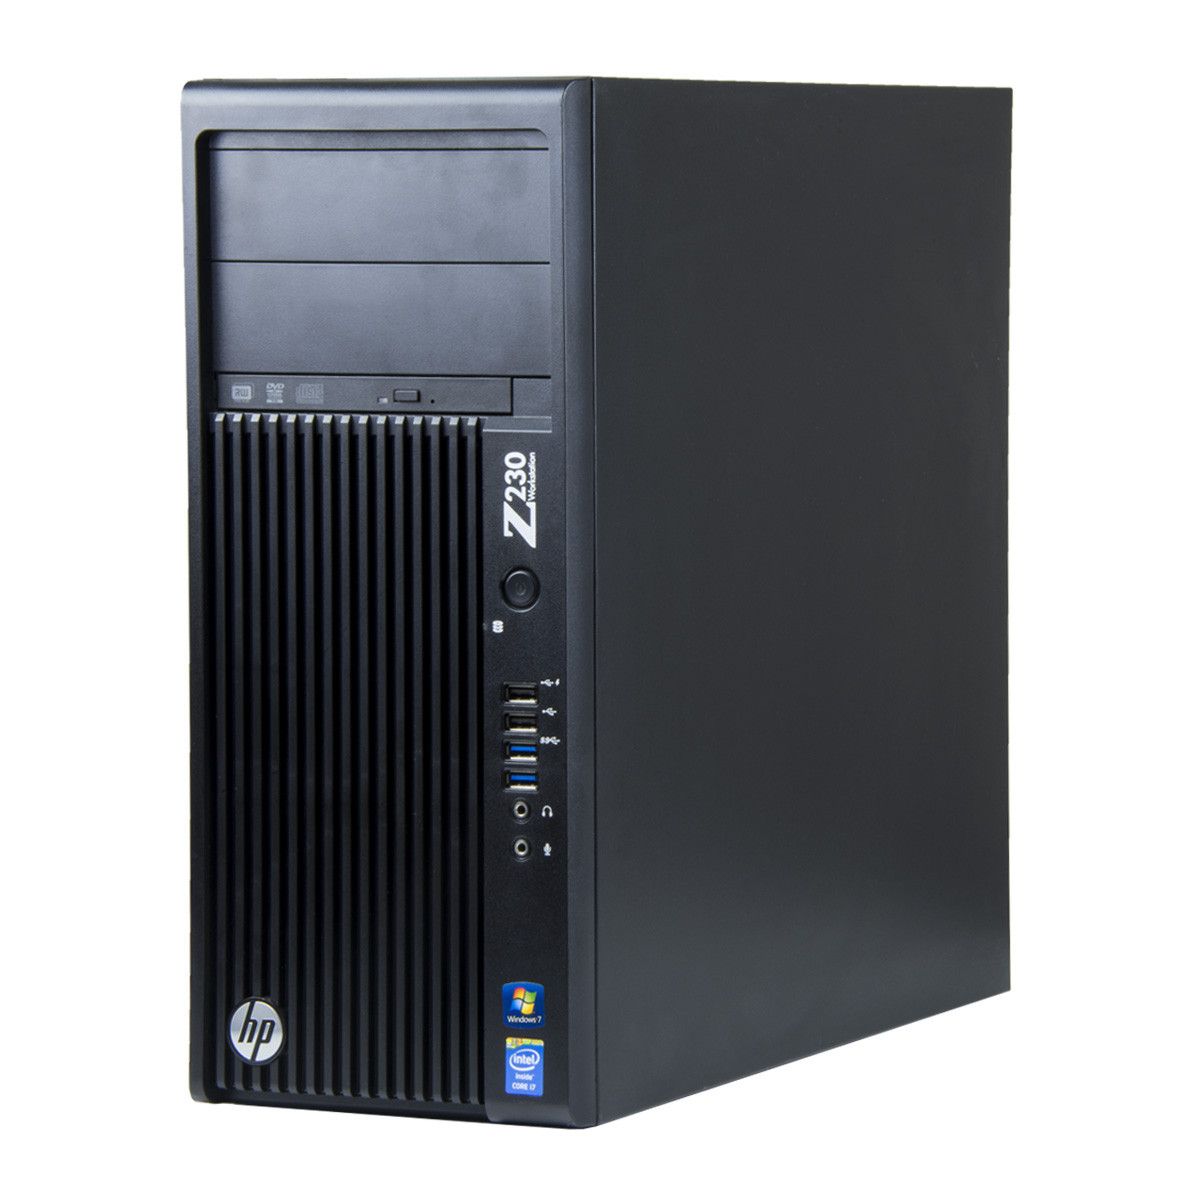 HP Z230, Xeon E3-1225 v3 pana la 3.60GHz, 16GB DDR3, 240GB SSD, DVD, Tower, workstation refurbished_1